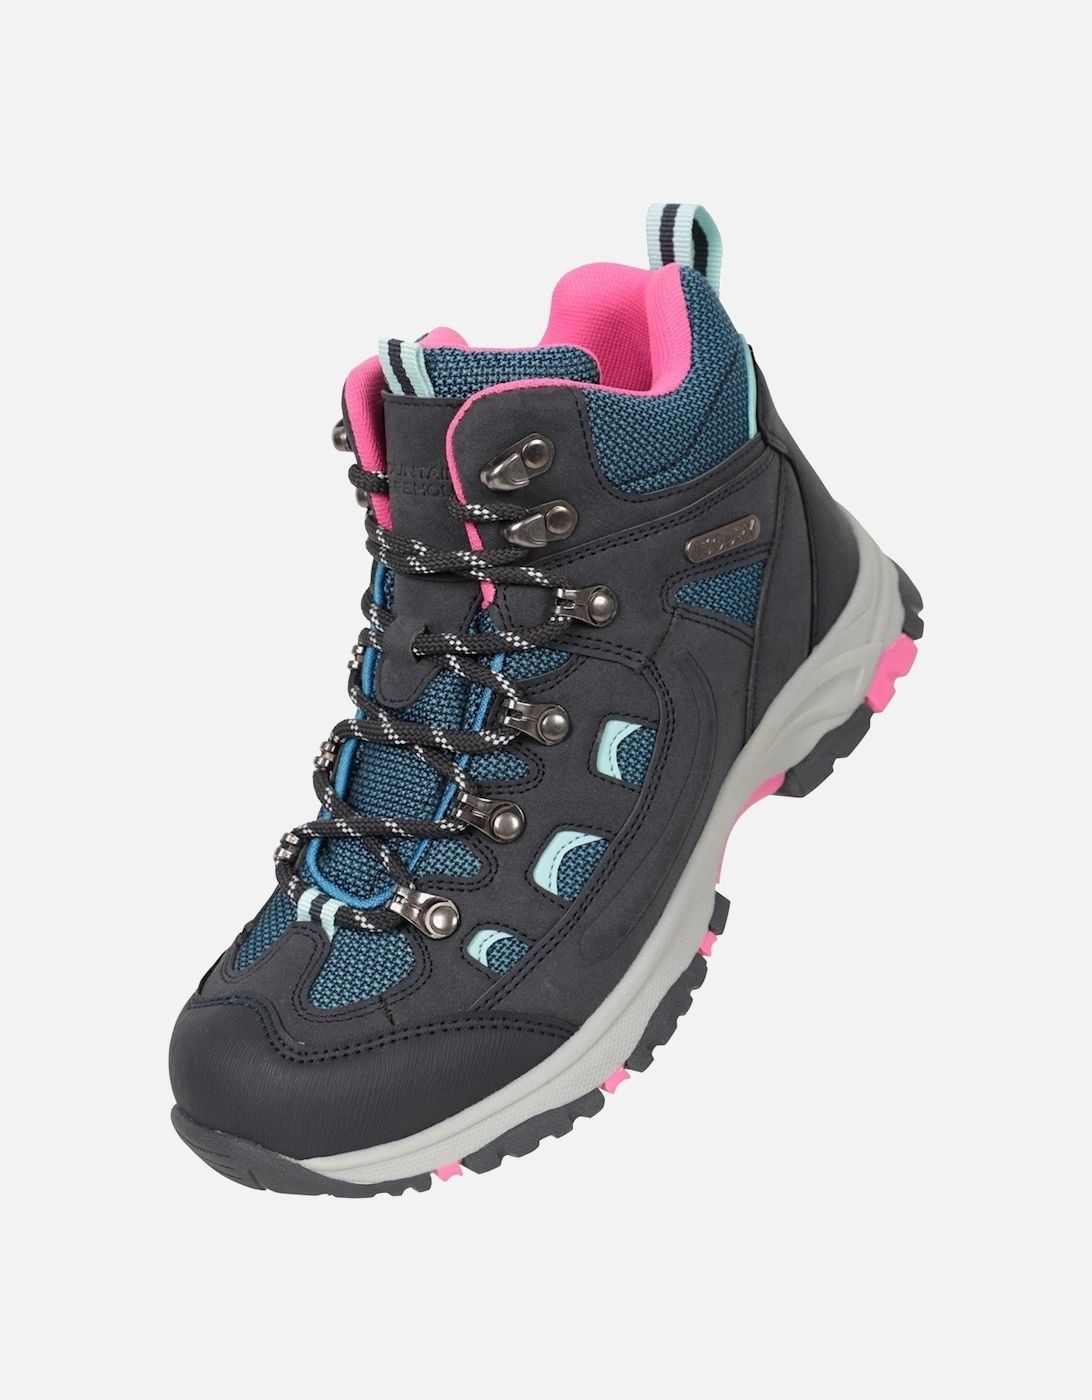 Childrens/Kids Adventurer Waterproof Walking Boots, 6 of 5